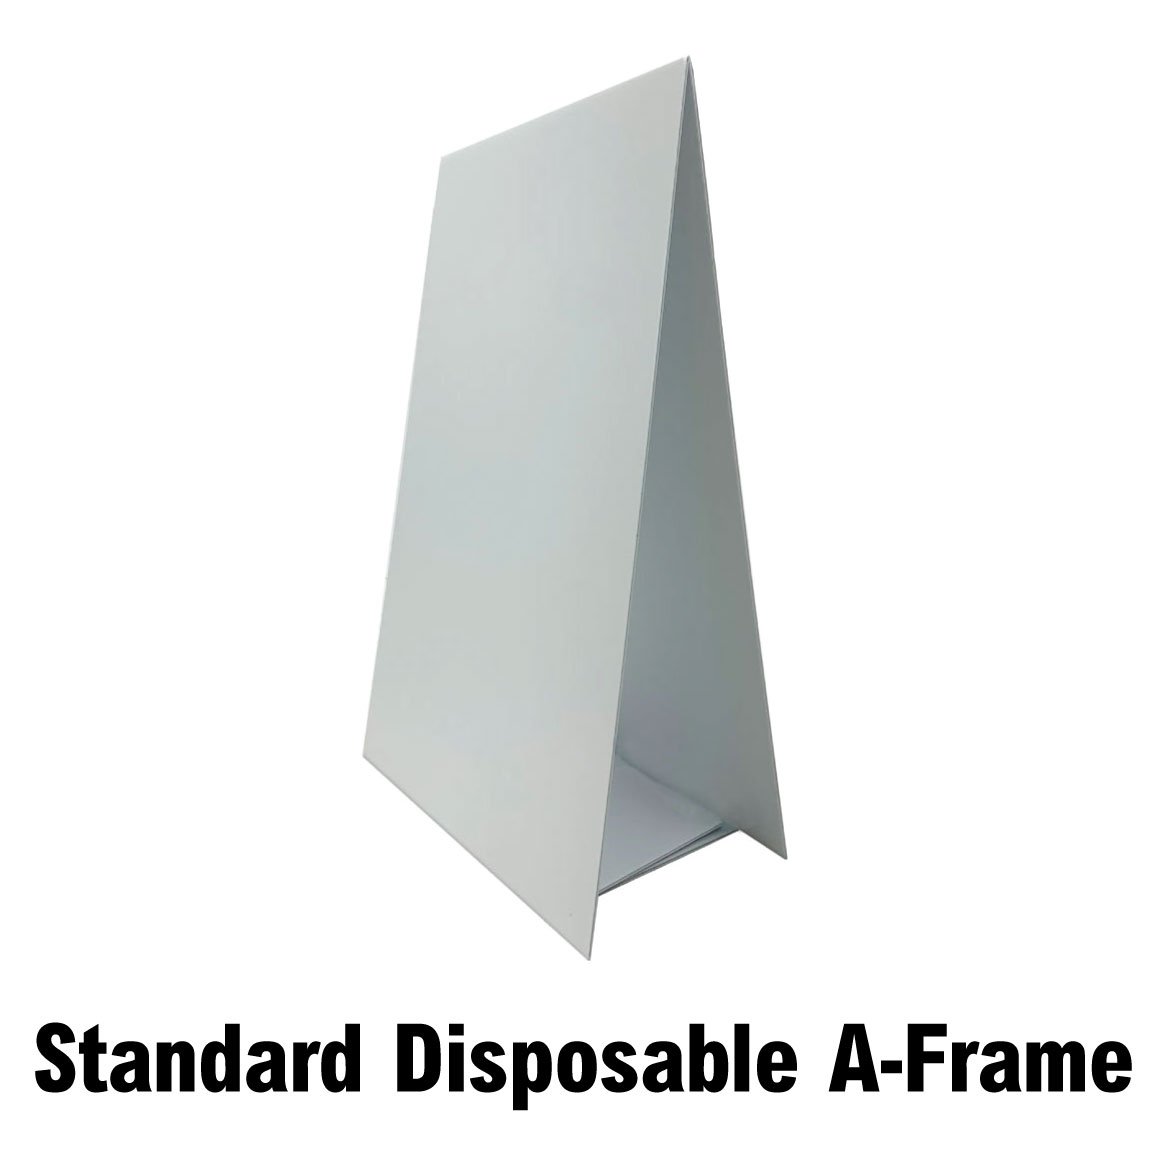 Disposable Custom Printed A-Frame Signs -  Order & Upload SD-CSTM-DISP-AFRAME - image 3